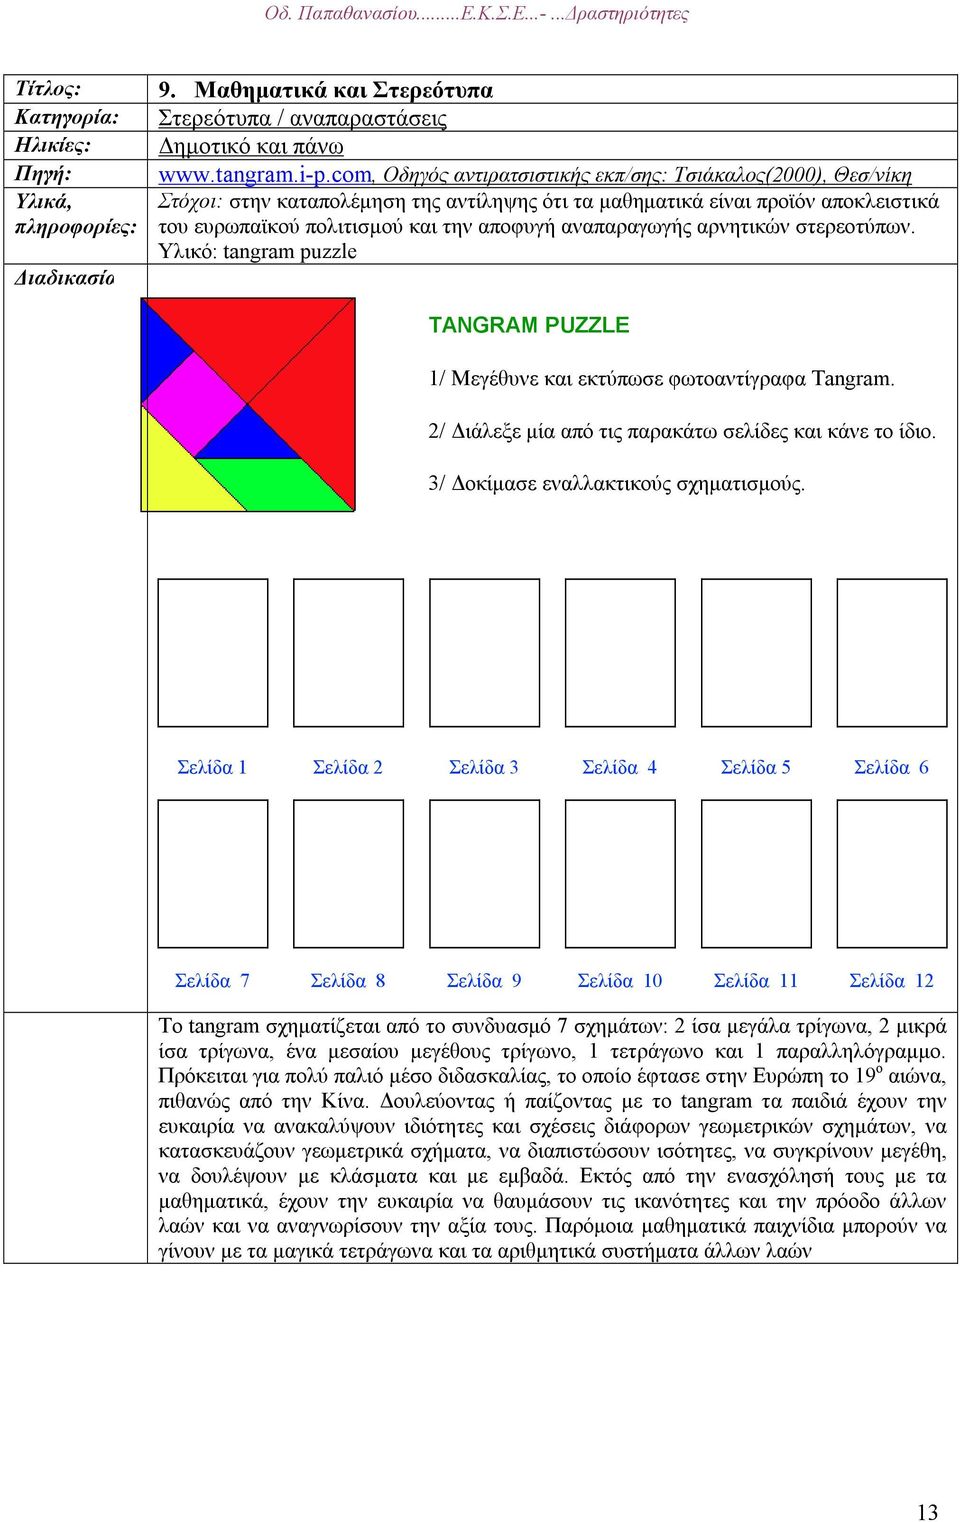 αναπαραγωγής αρνητικών στερεοτύπων. Υλικό: tangram puzzle TANGRAM PUZZLE 1/ Μεγέθυνε και εκτύπωσε φωτοαντίγραφα Tangram. 2/ ιάλεξε µία από τις παρακάτω σελίδες και κάνε το ίδιο.